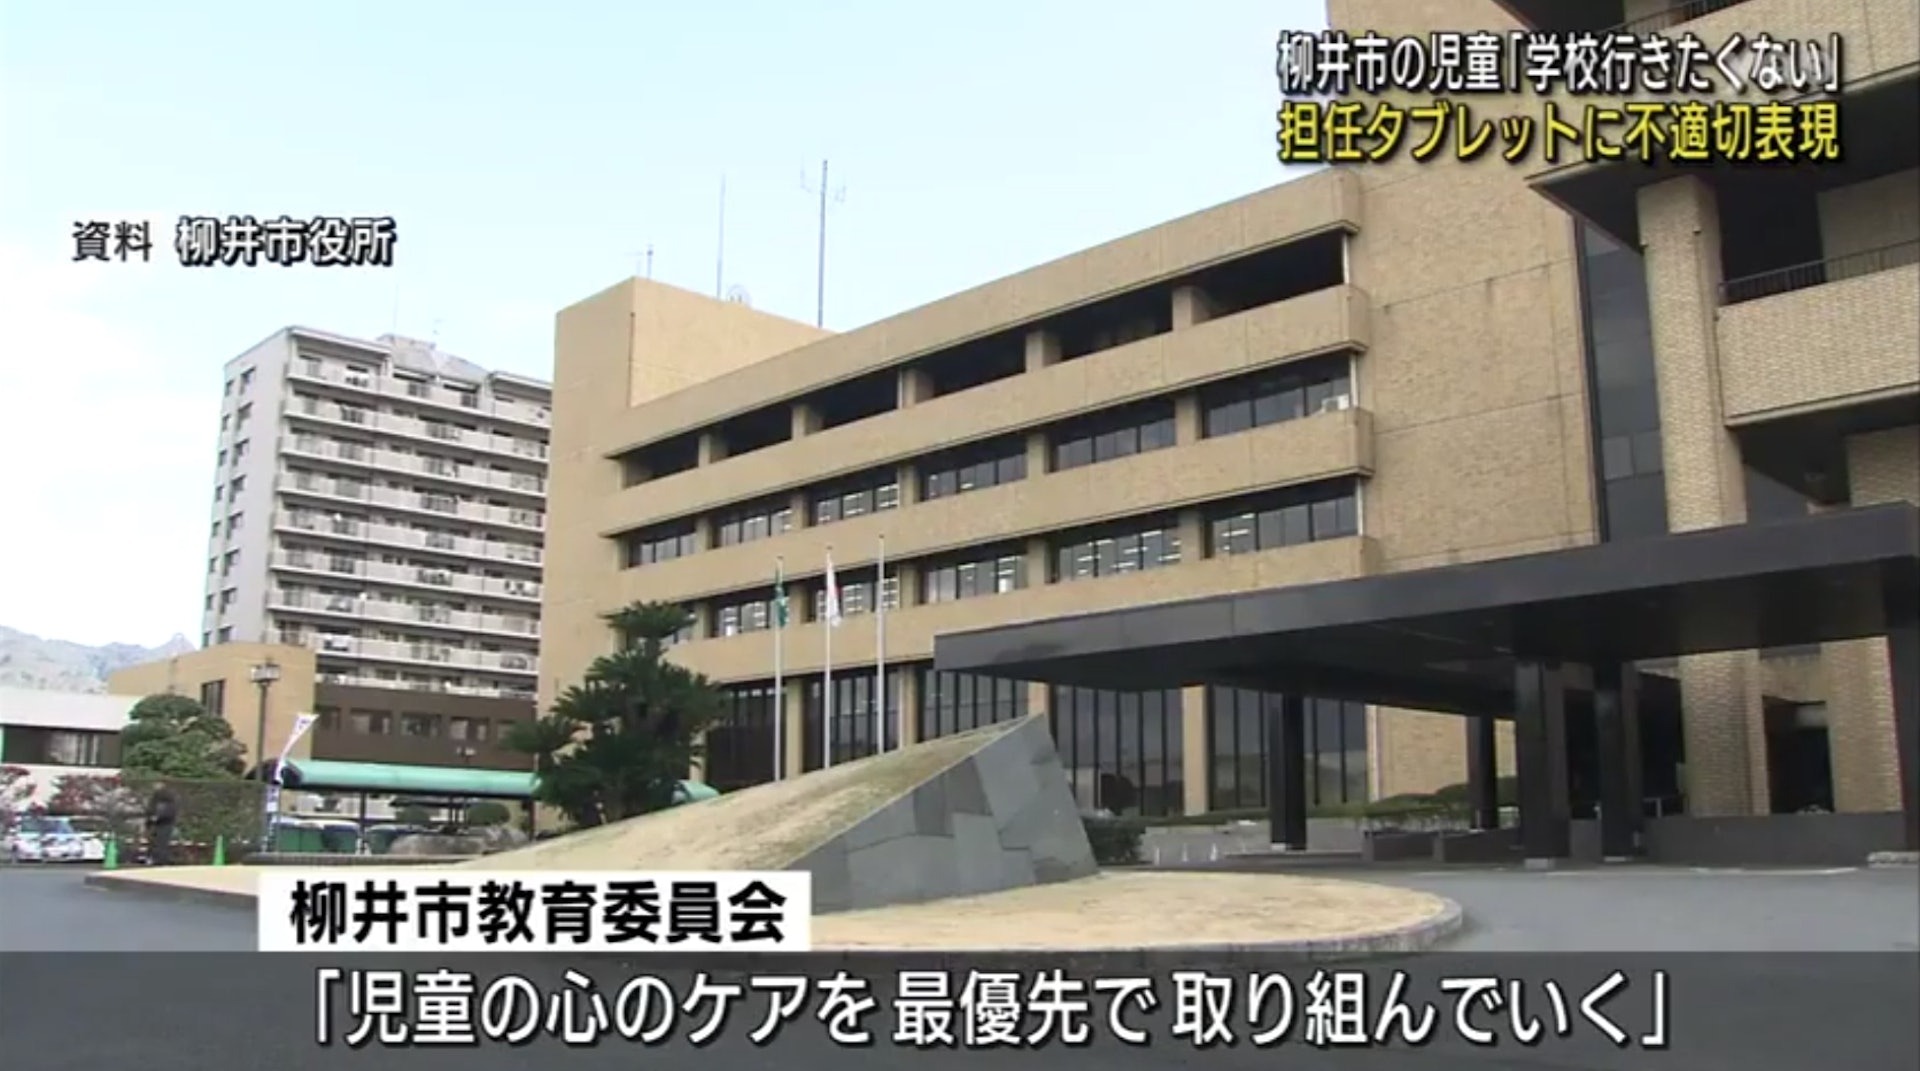 Trường học xảy ra sự việc hy hữu được báo đài Nhật Bản đưa tin